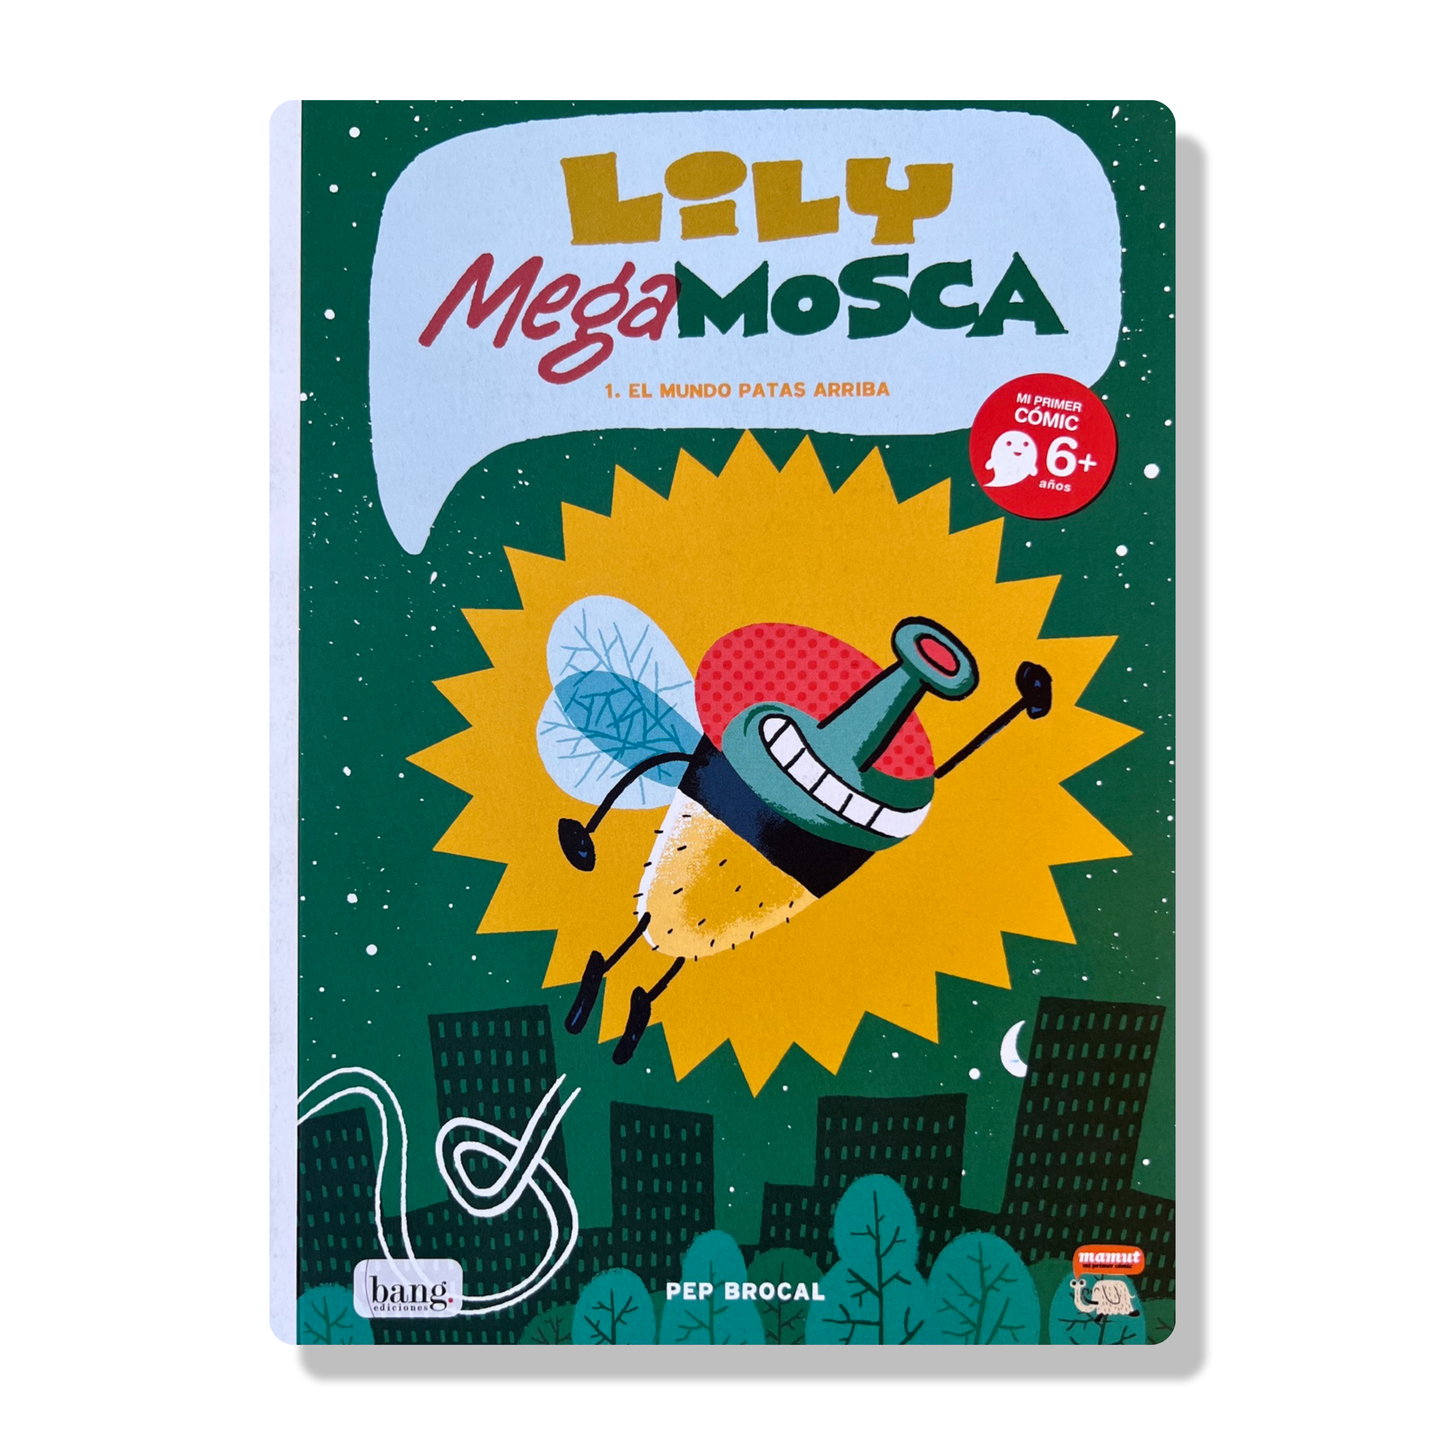 Lily Mega Mosca 1. El mundo patas arriba